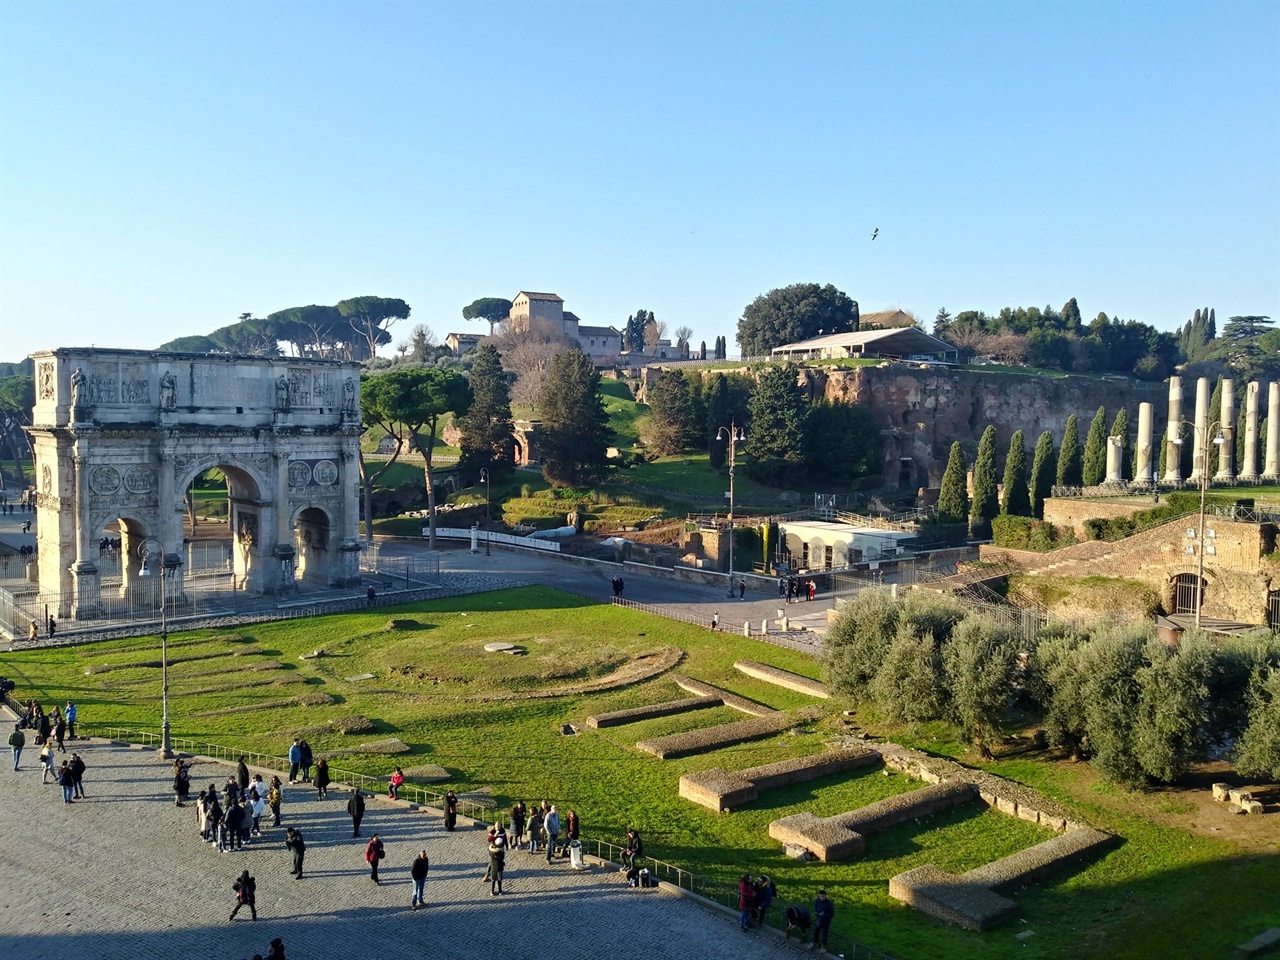 로마제국의 시작점 콜로세오에서 바라본 콘스탄티누스 개선문과 팔라티노 언덕의 모습. 포로 로마노의 시작이자, 로마가 시작된 역사적인 곳이다.